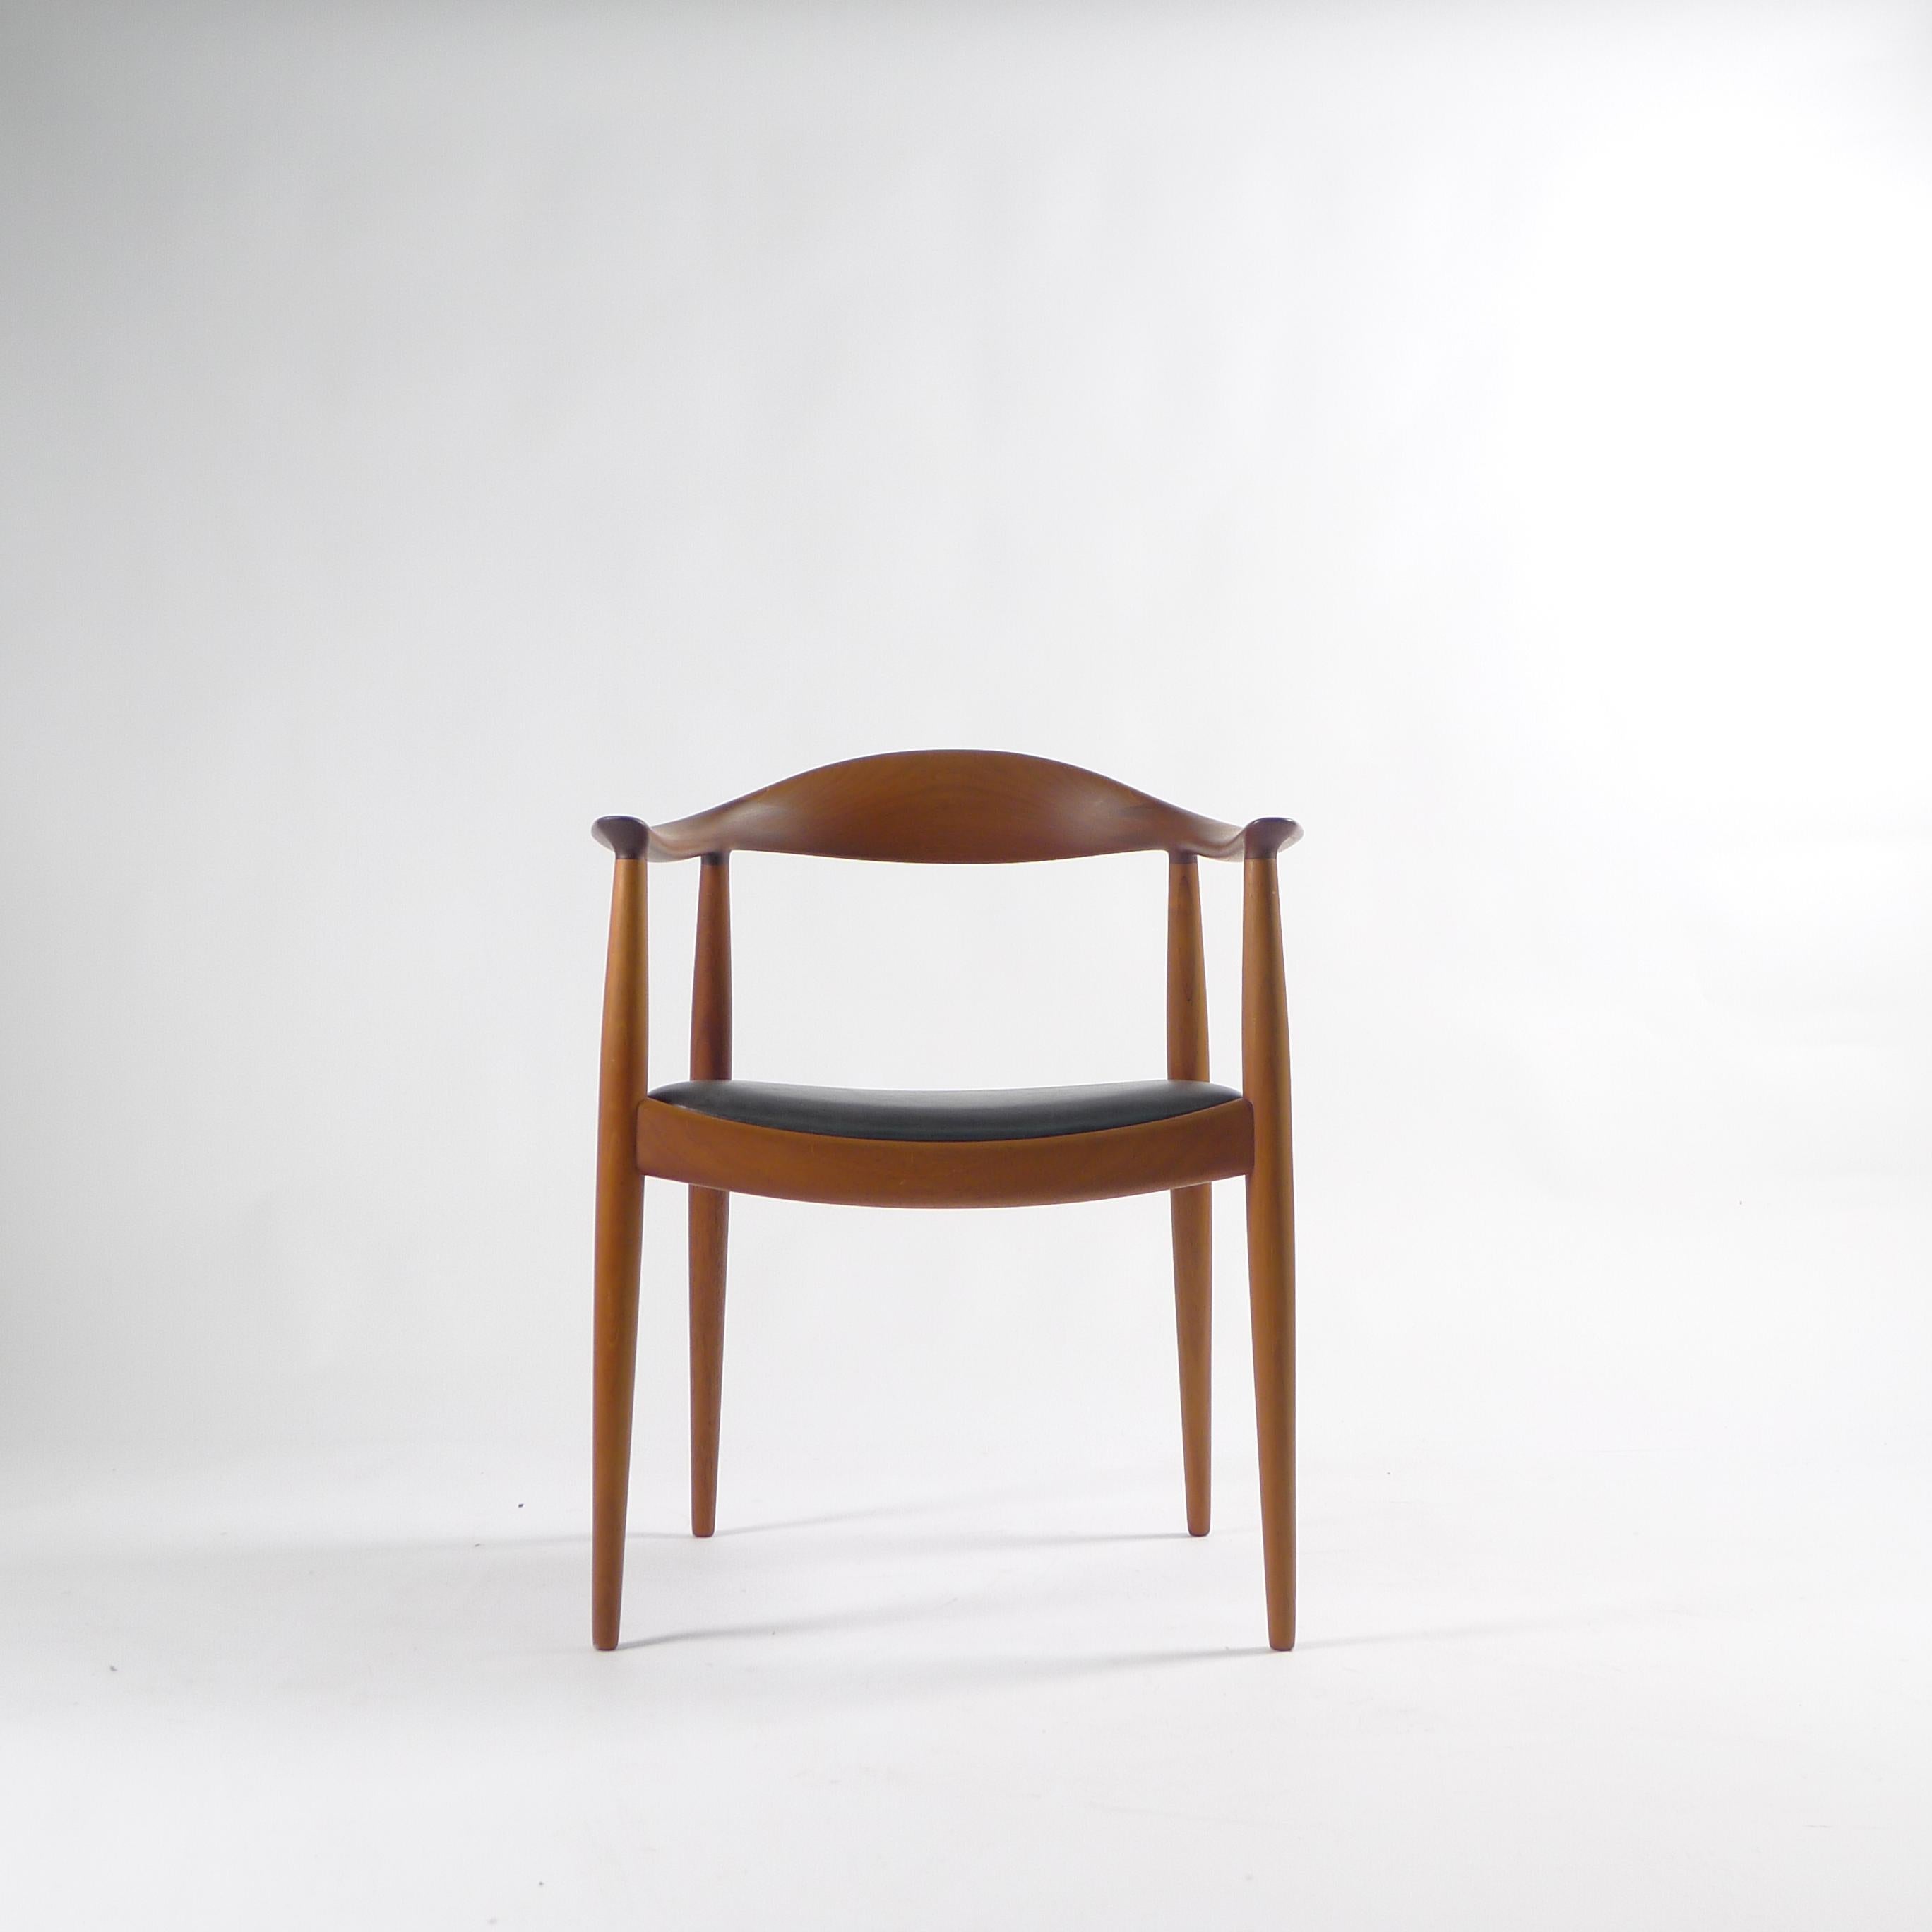 Hans J. Wegner, The Chair/Round Chair, Design 1949, für Johannes Hansen, Dänemark (Holzarbeit)